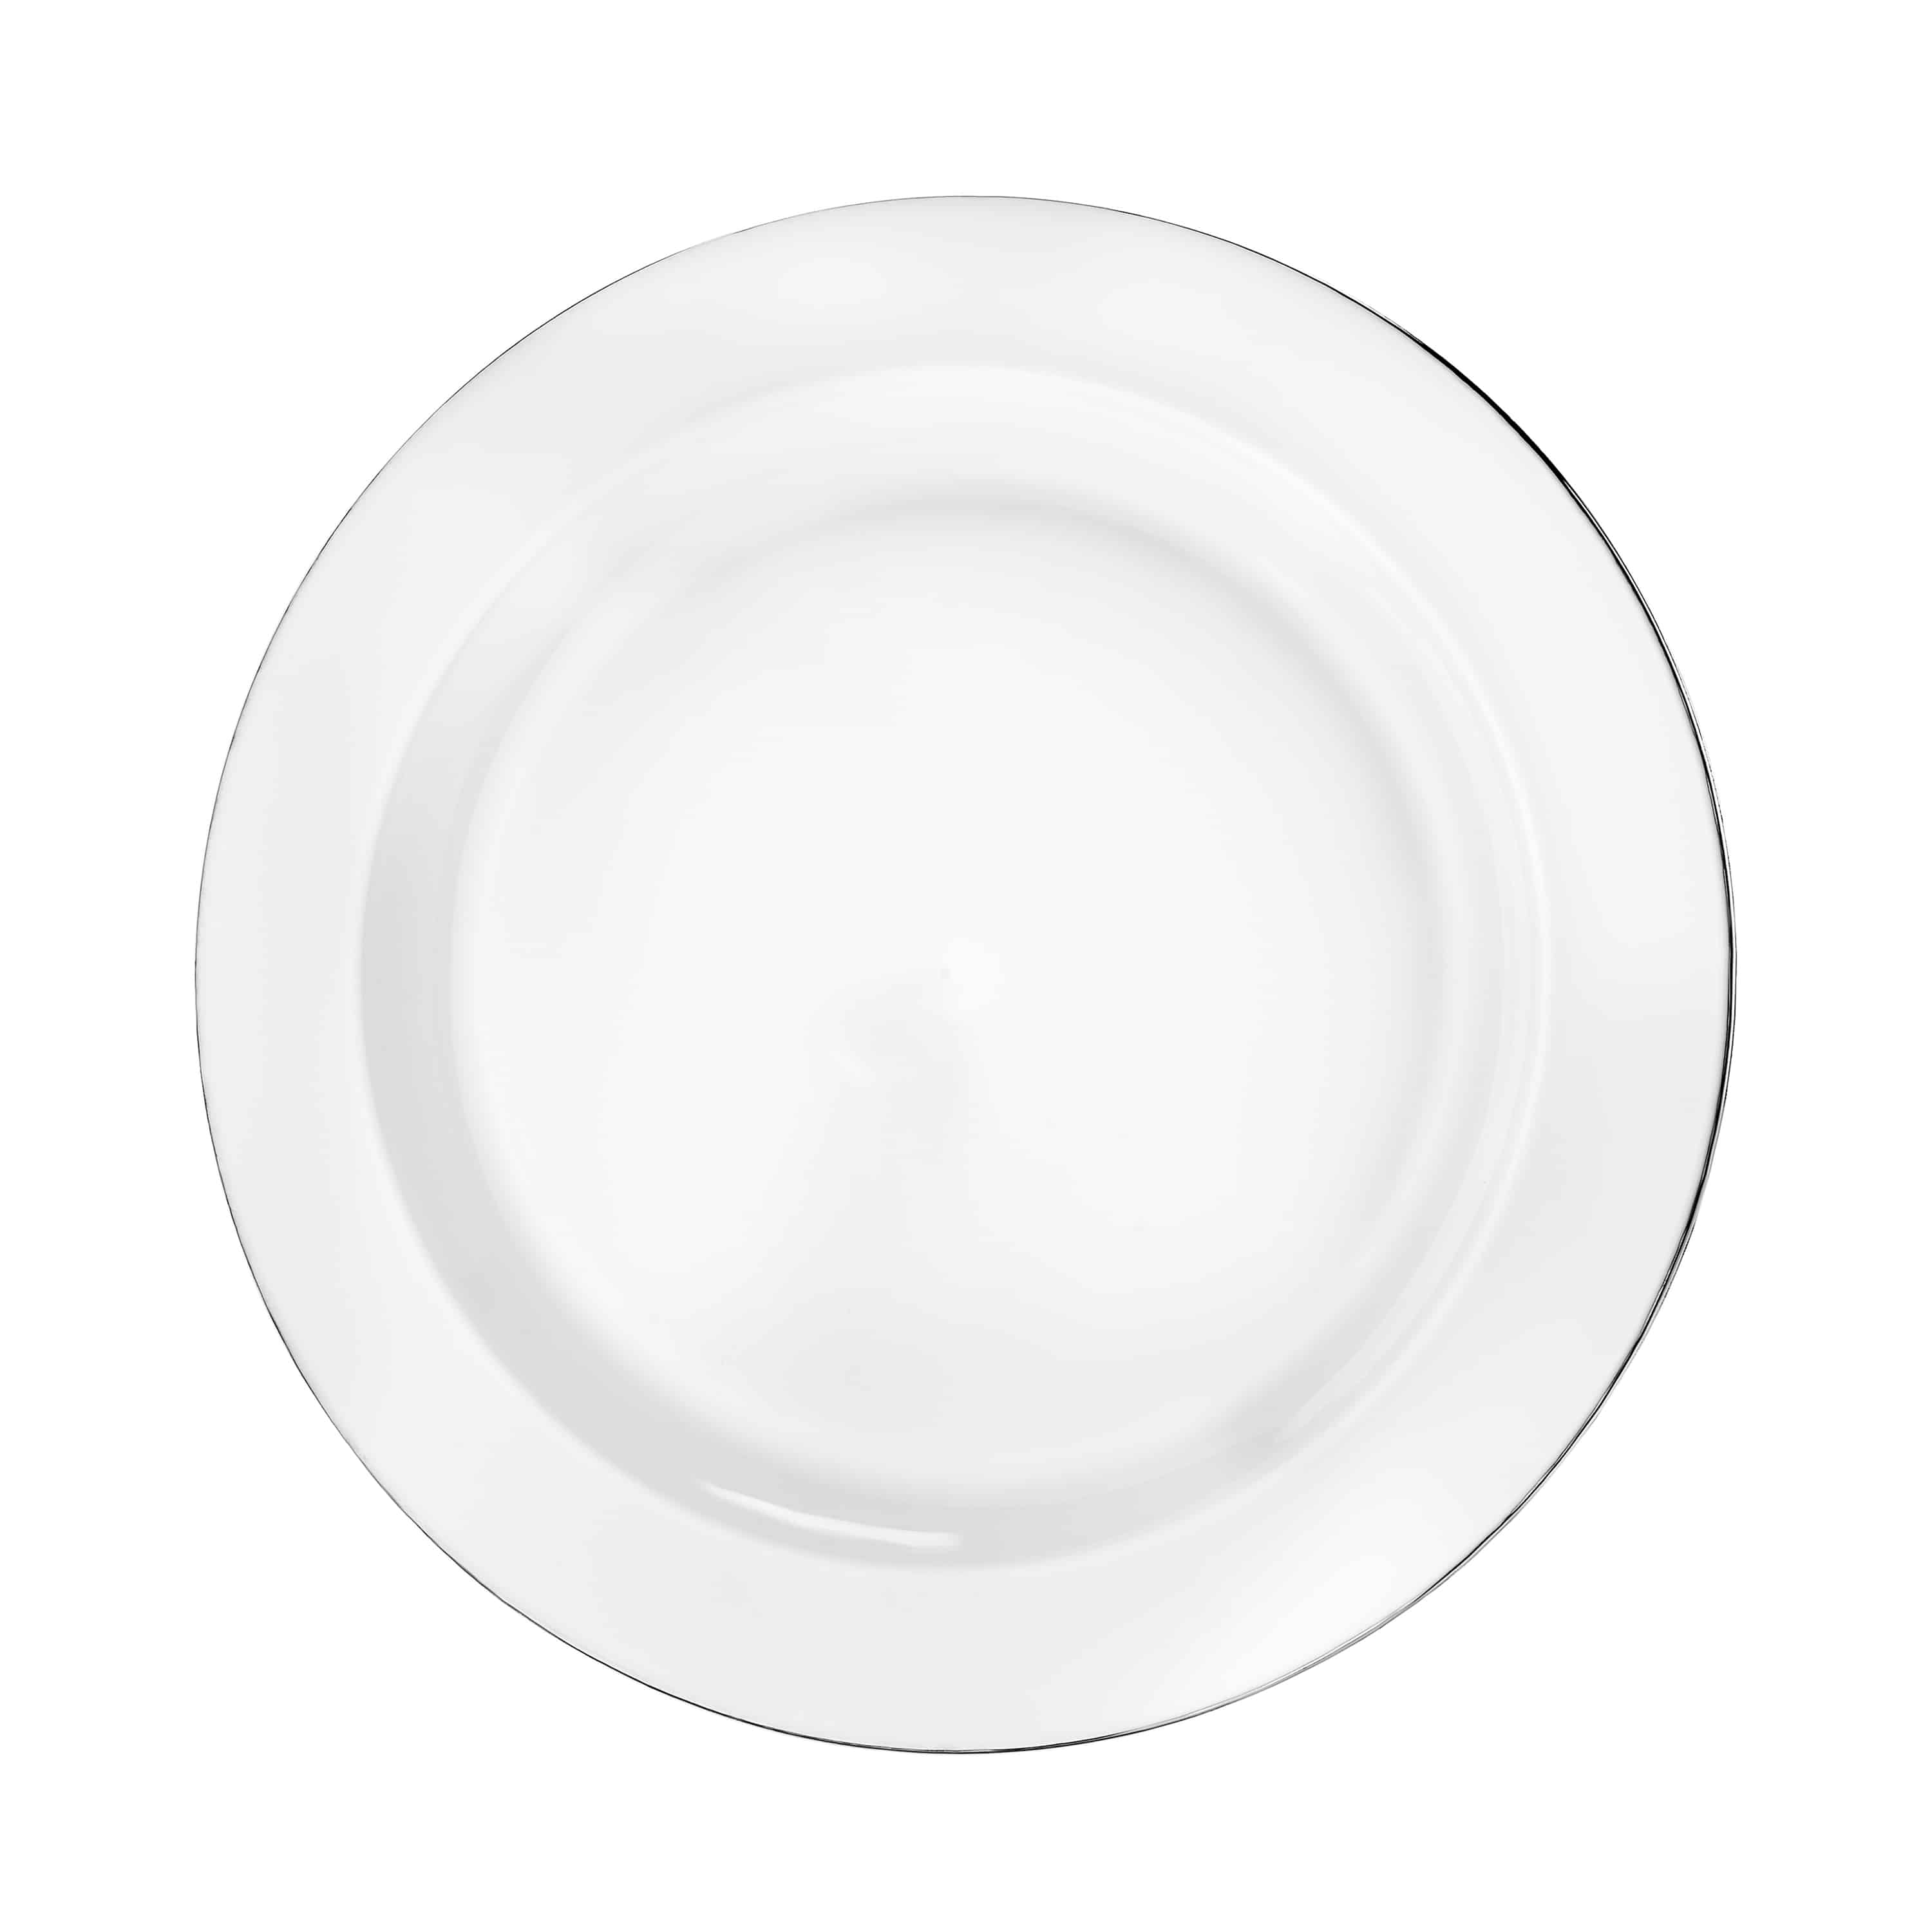 Magnificence Silver Edge Premium Plastic Round Dinnerware